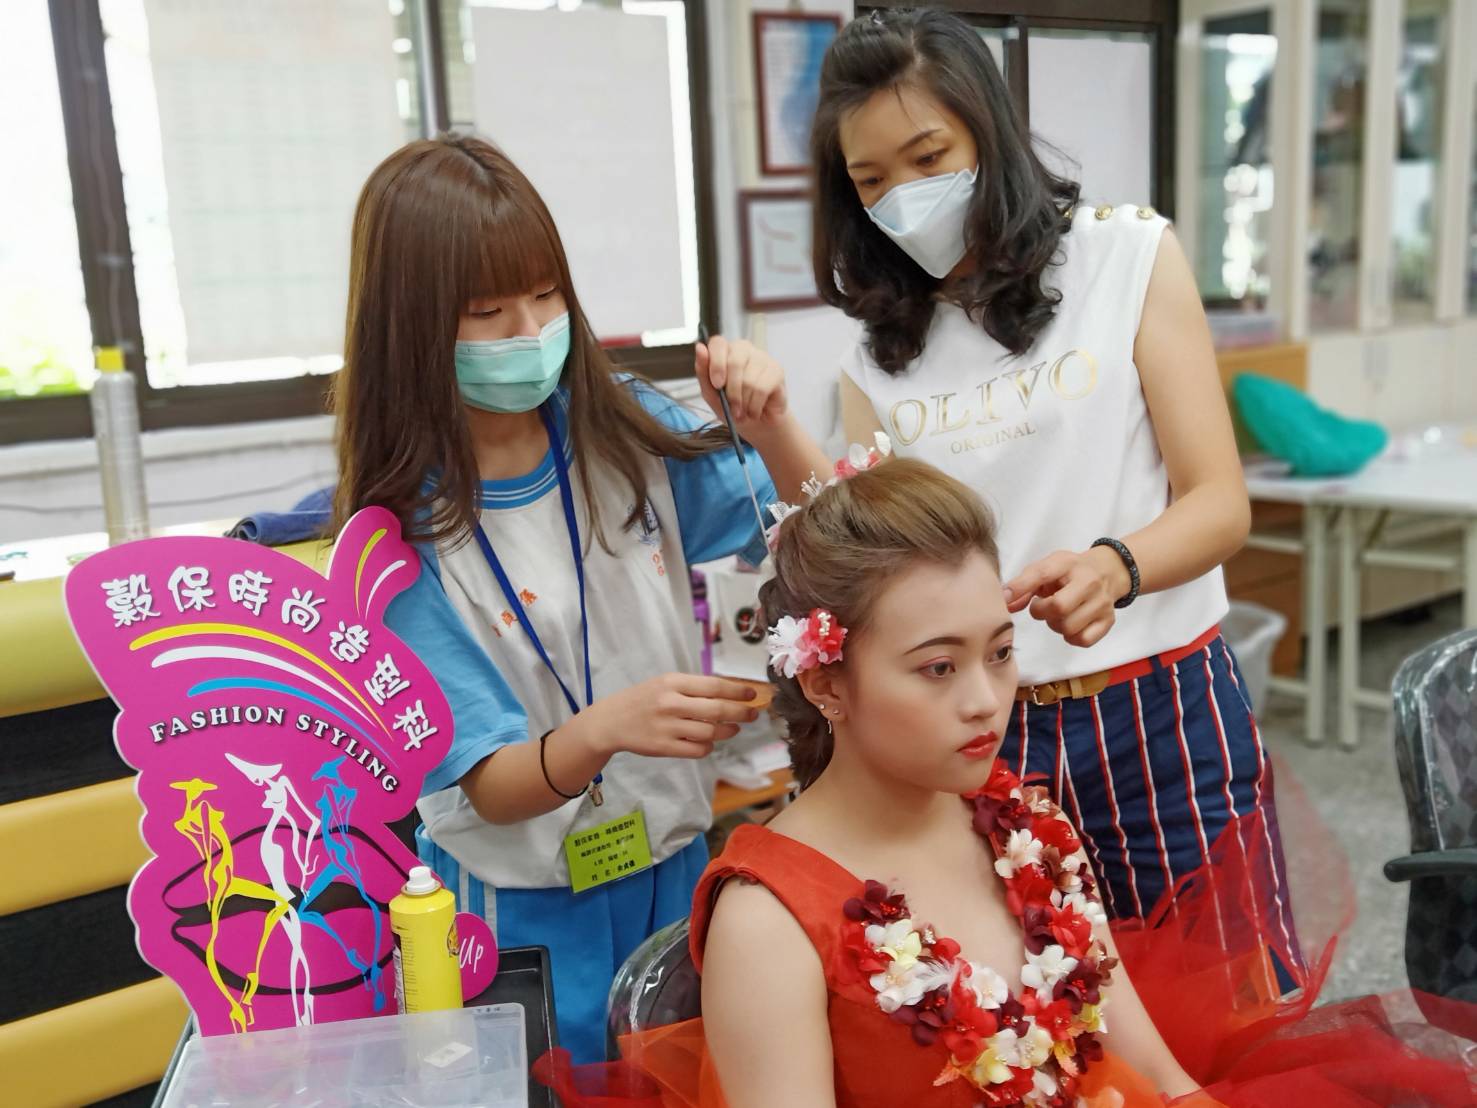 1.韓國時尚美型Party，帶領學生製作花瓣剪裁及花卉髮飾，用俐落的剪裁及流暢的線條做造型